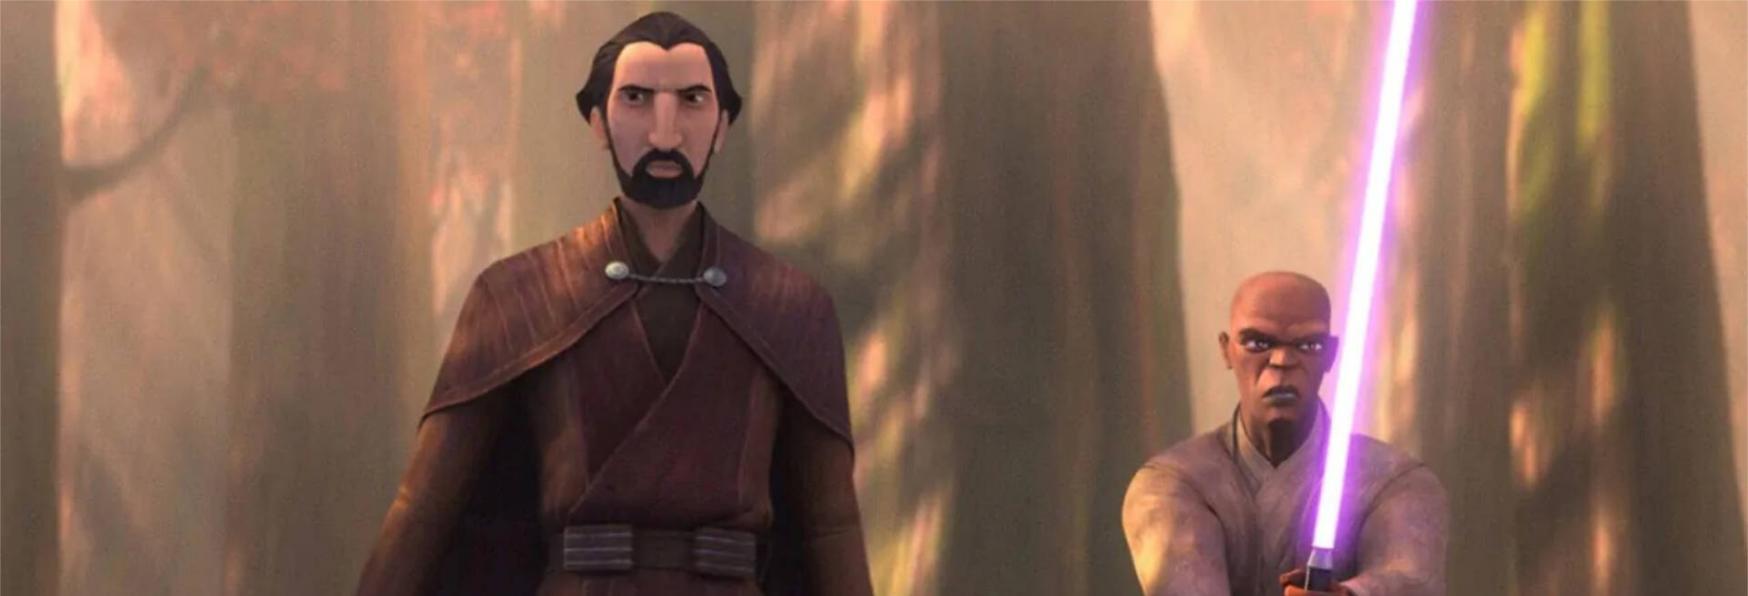 Star Wars: Tales Of The Jedi 2 - La Serie Animata è stata Rinnovata per una nuova Stagione